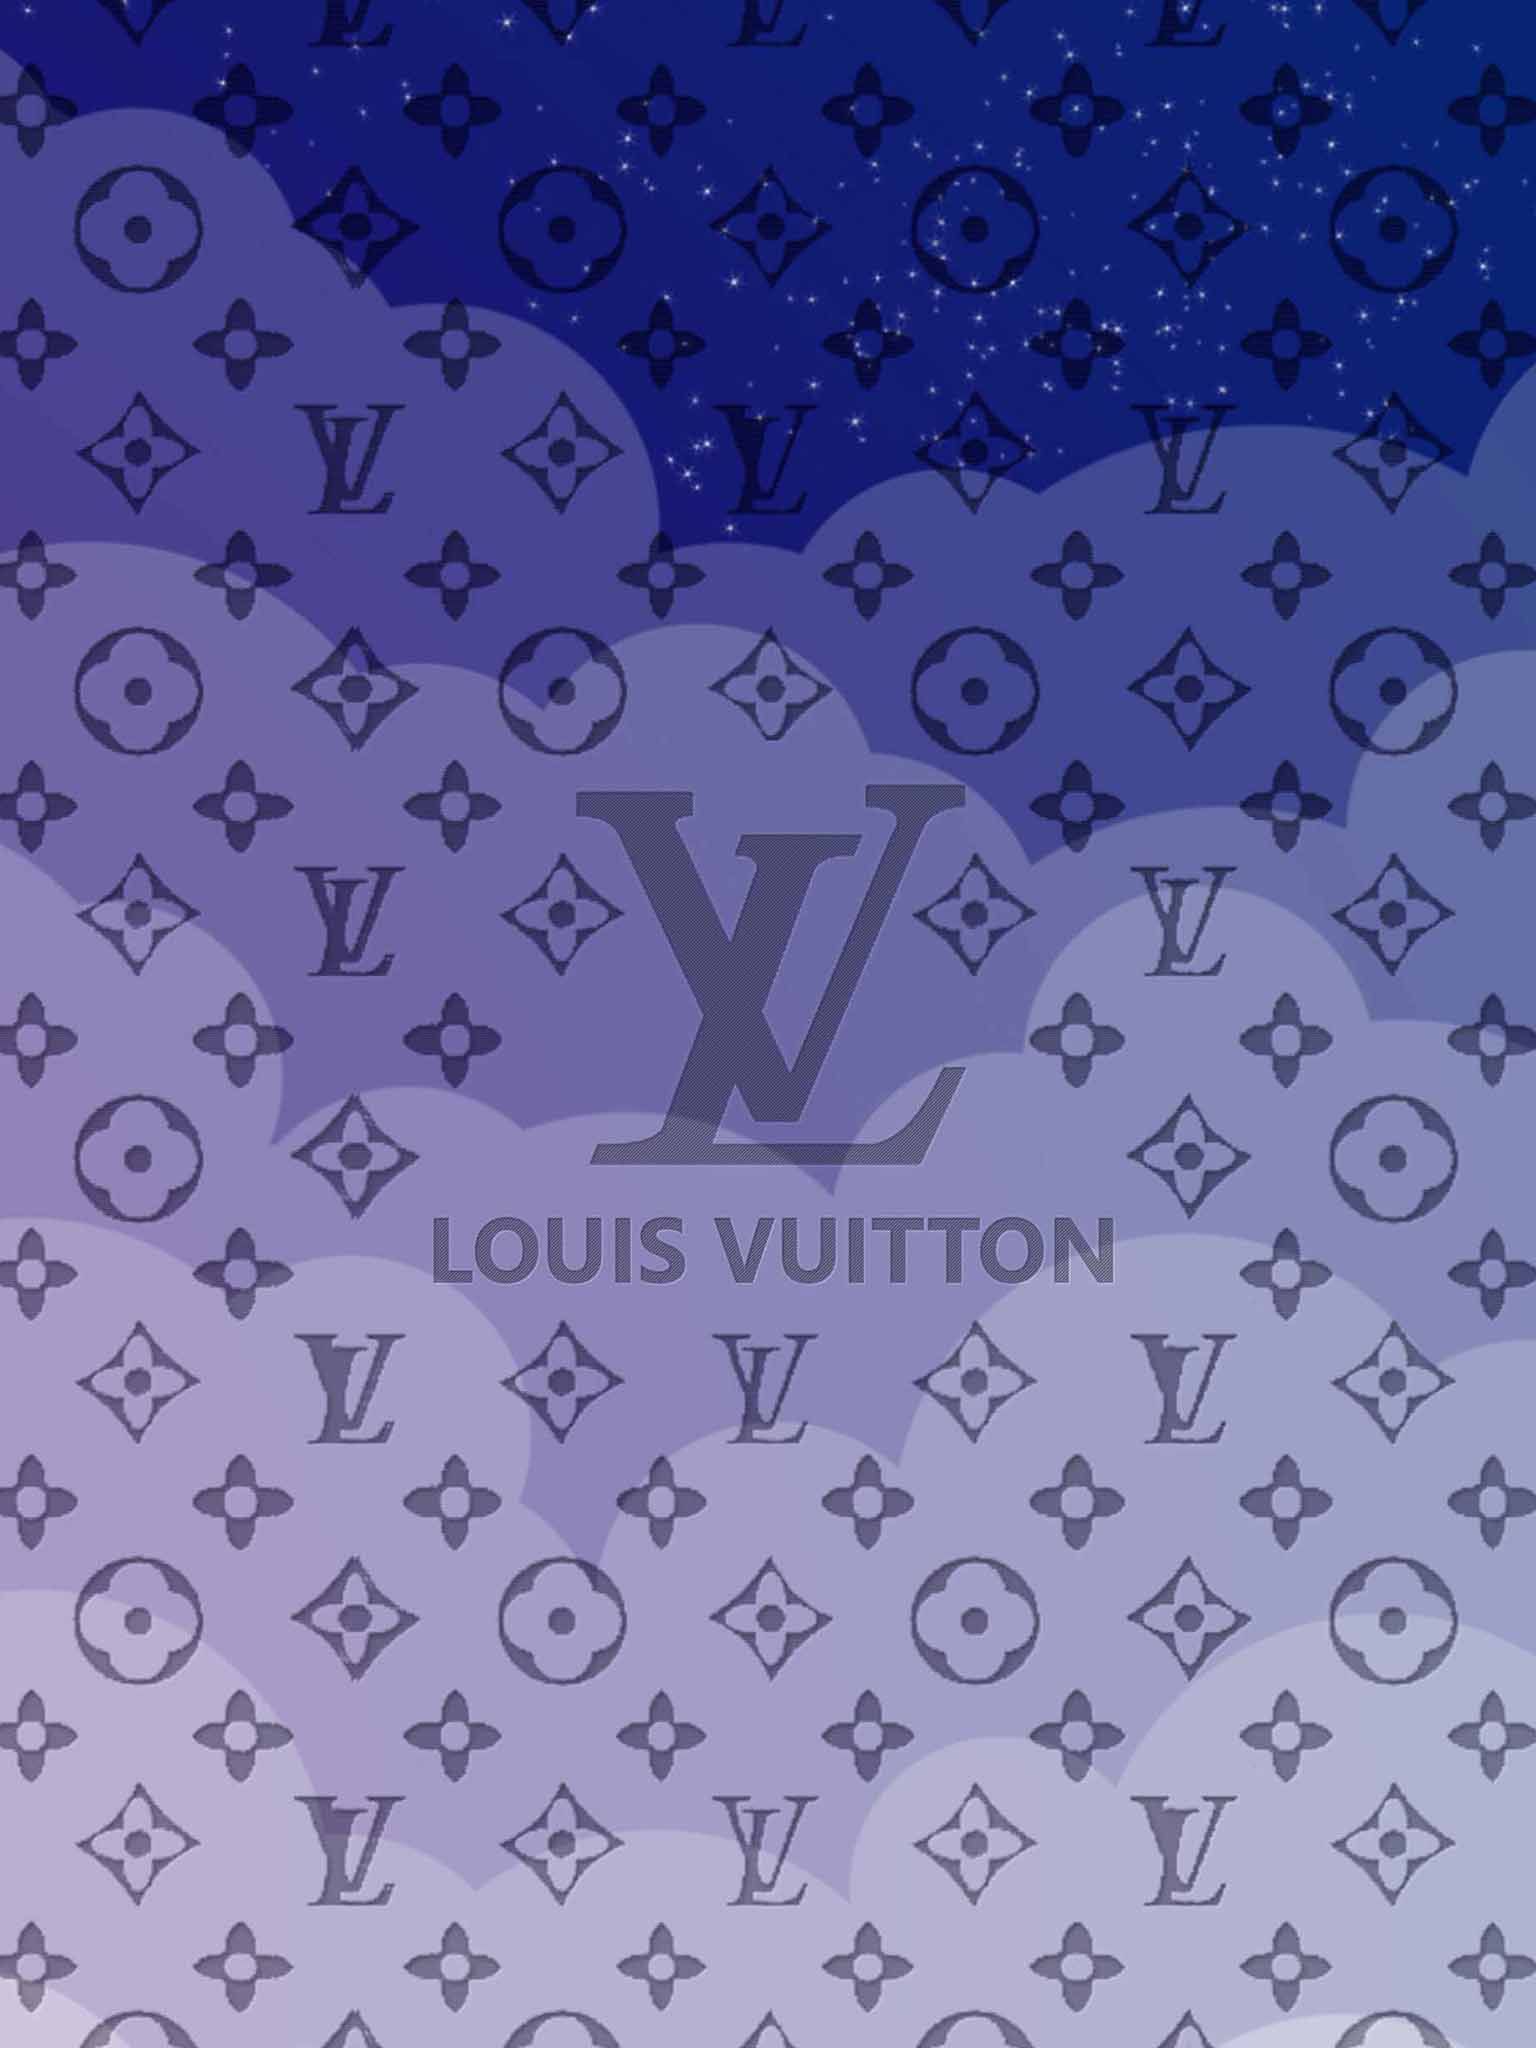 555 Hình Nền Louis Vuitton Thời Thượng, Đẹp Chất [Sang Xịn Mịn]